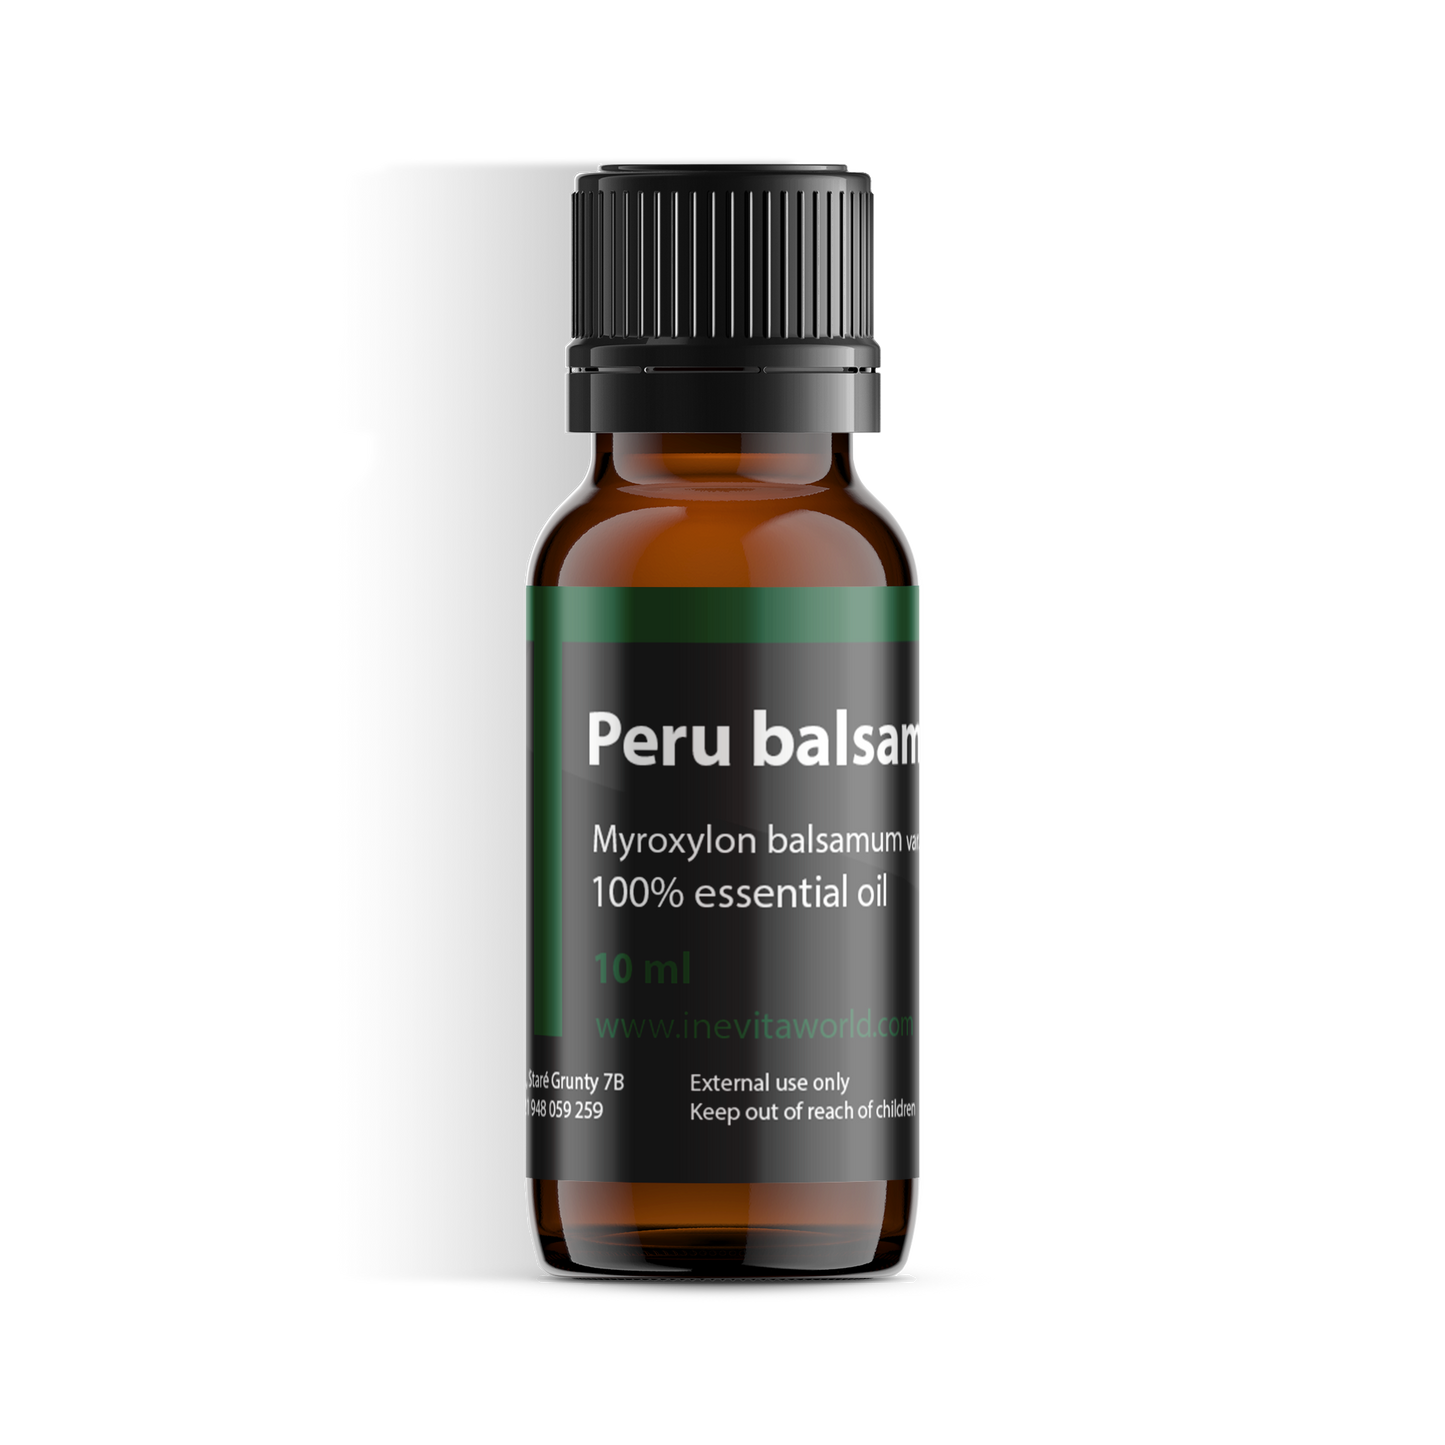 Peru balsam